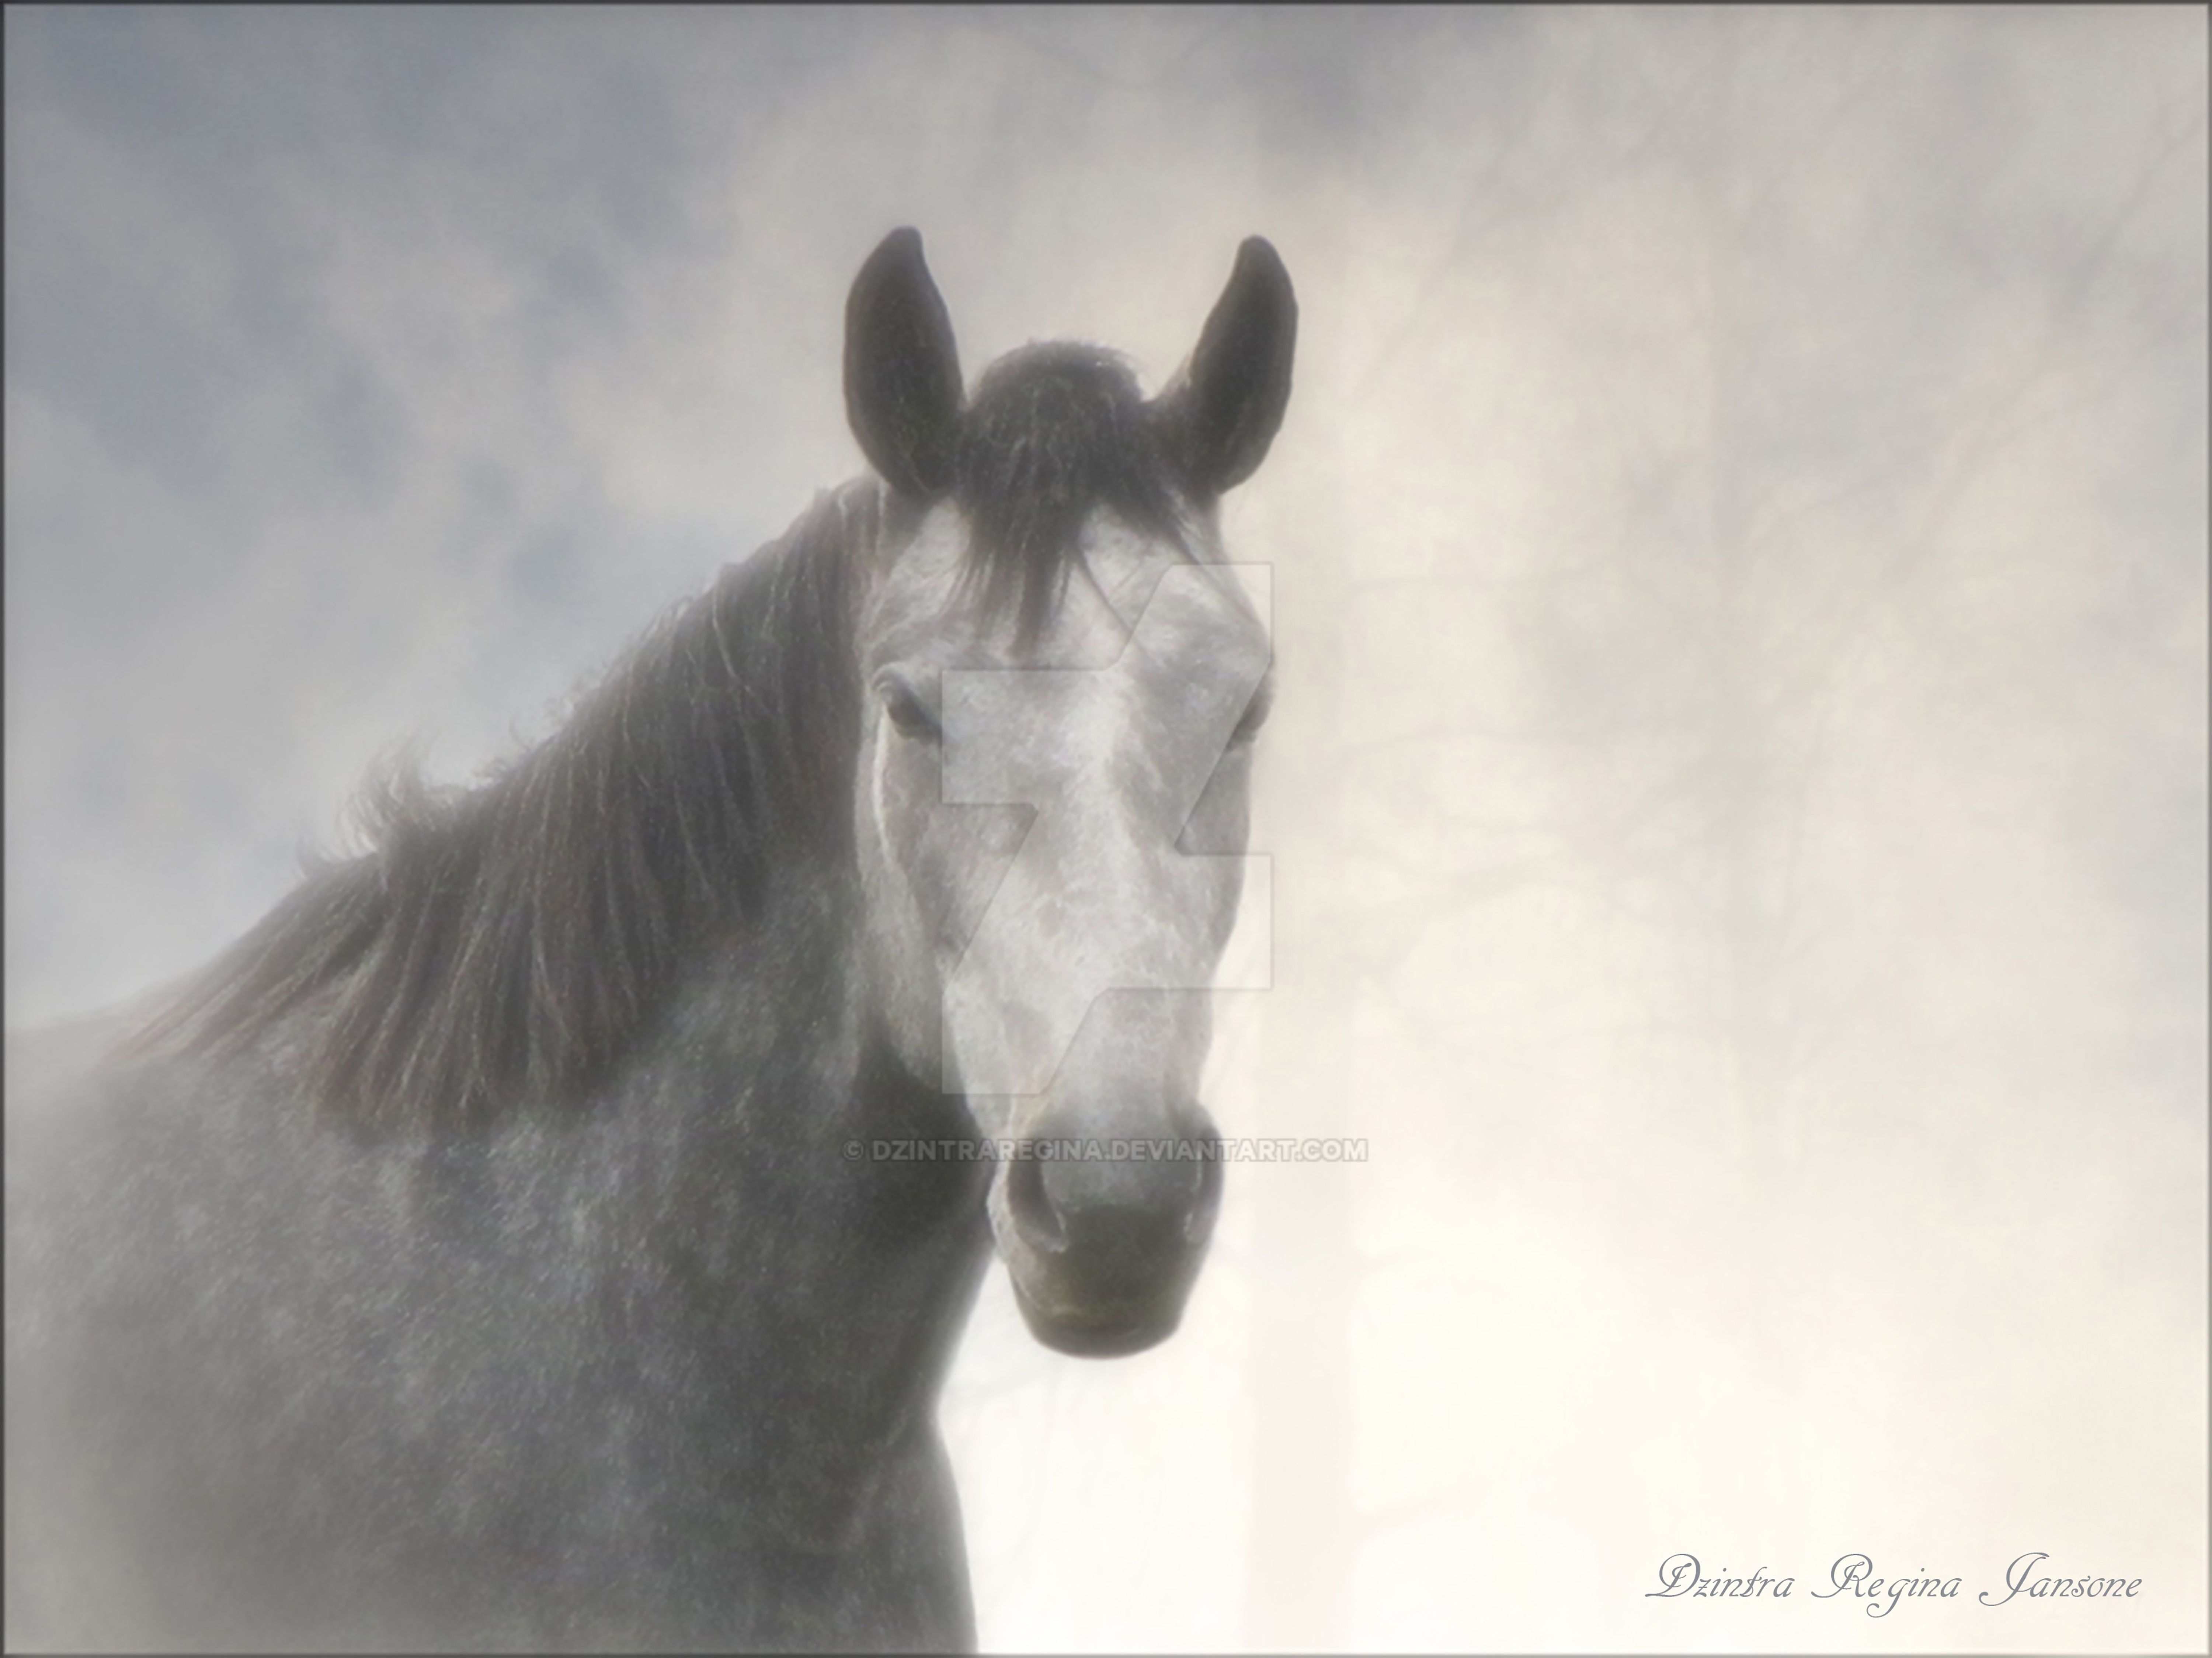 horse-in-mist-by-dzintraregina-on-deviantart